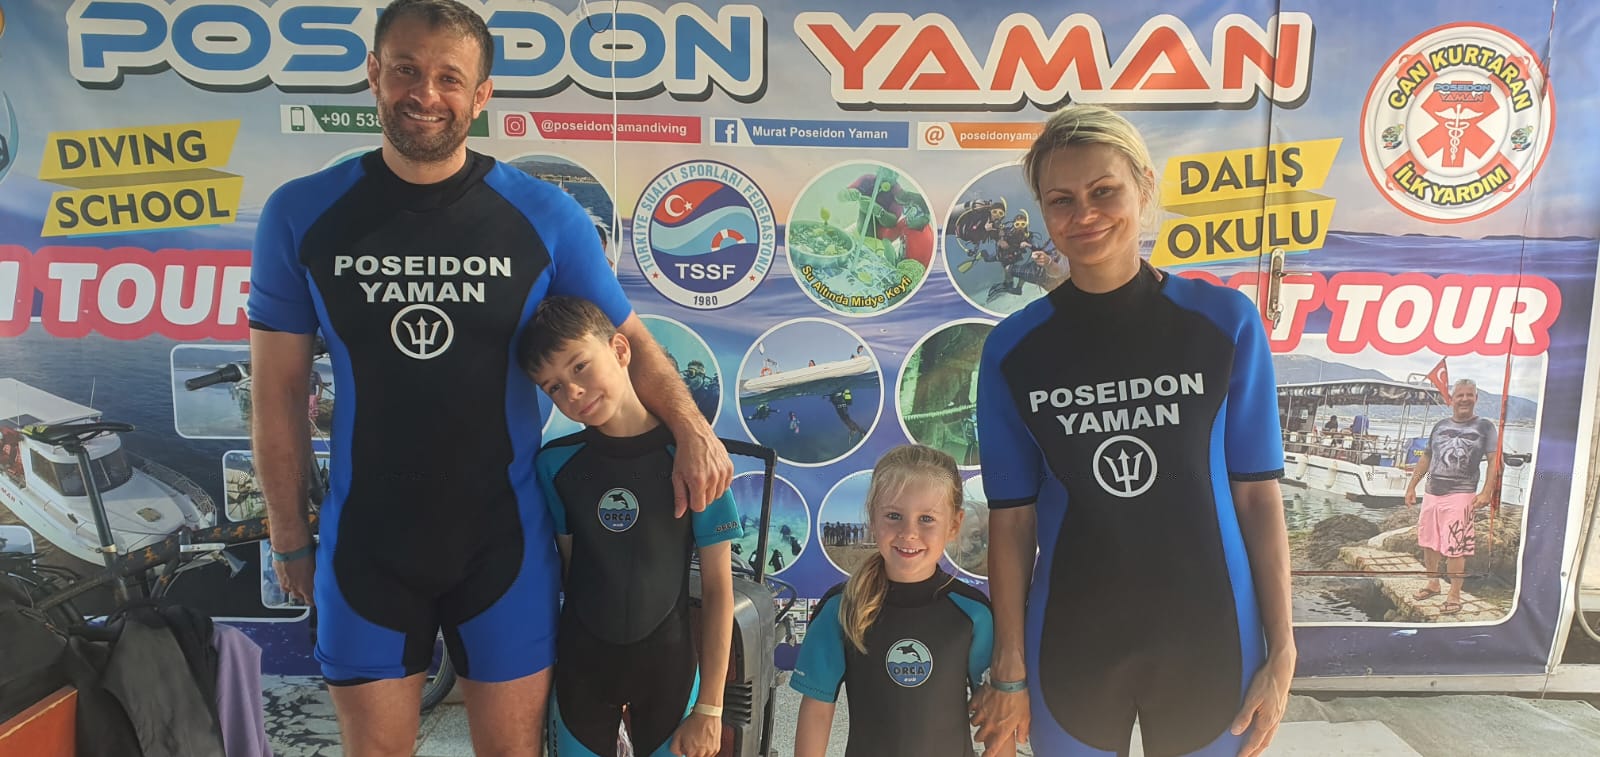 Gümüldür Dalış Okulu Ve Su Sporları & Poseidon Yaman Dıvıng Water Sports